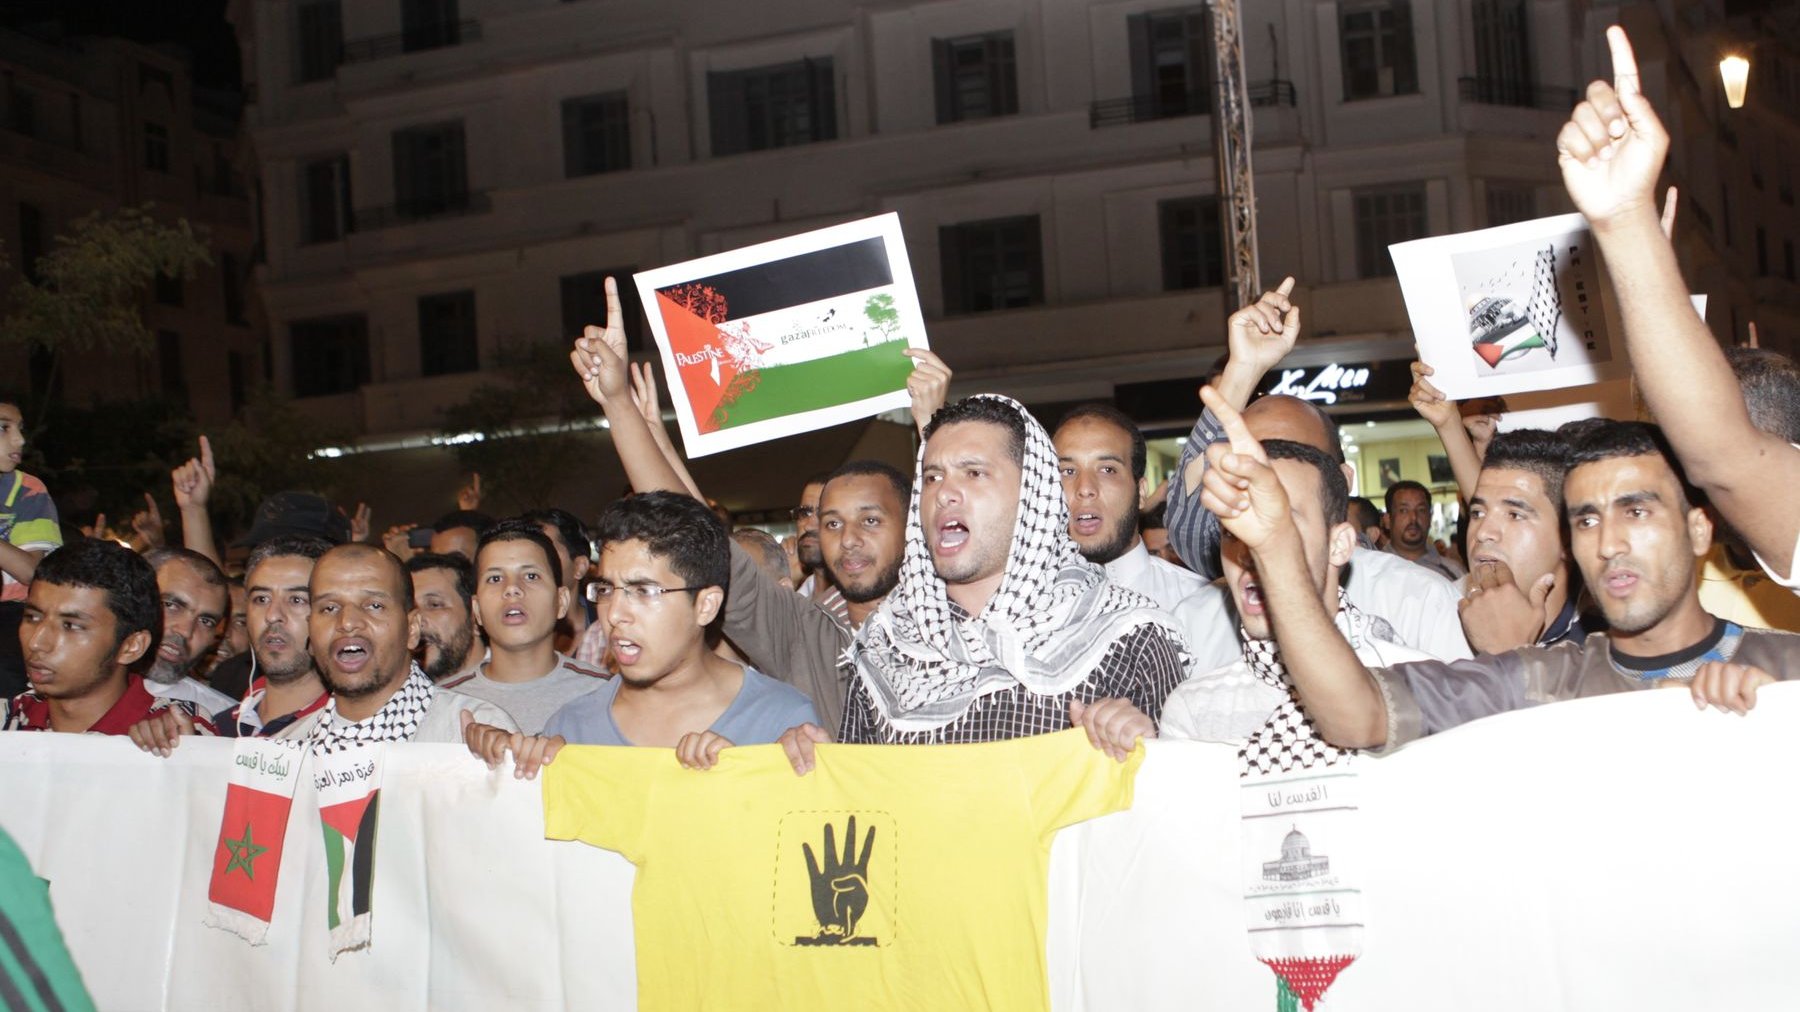 Les manifestants ont ainsi exprimé leur colère contre "les crimes de la guerre sioniste", "la punition collective menée par Israël contre les civils palestiniens", et exigé des "sanctions internationales" contre Israël. 
